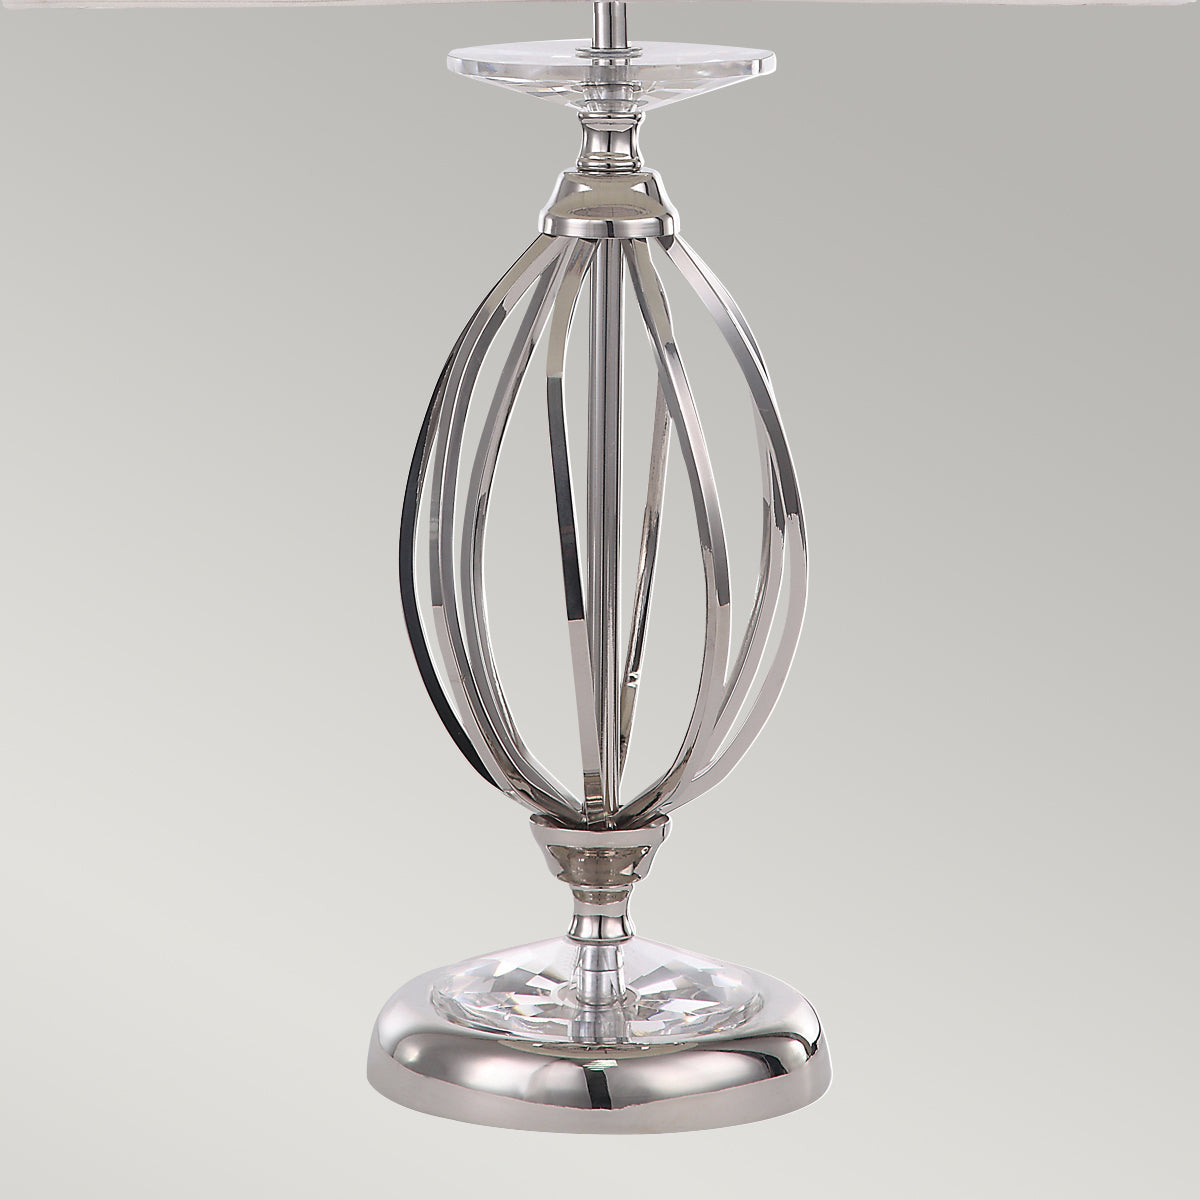 Aegean 1 Light Table Lamp - Polished Nickel